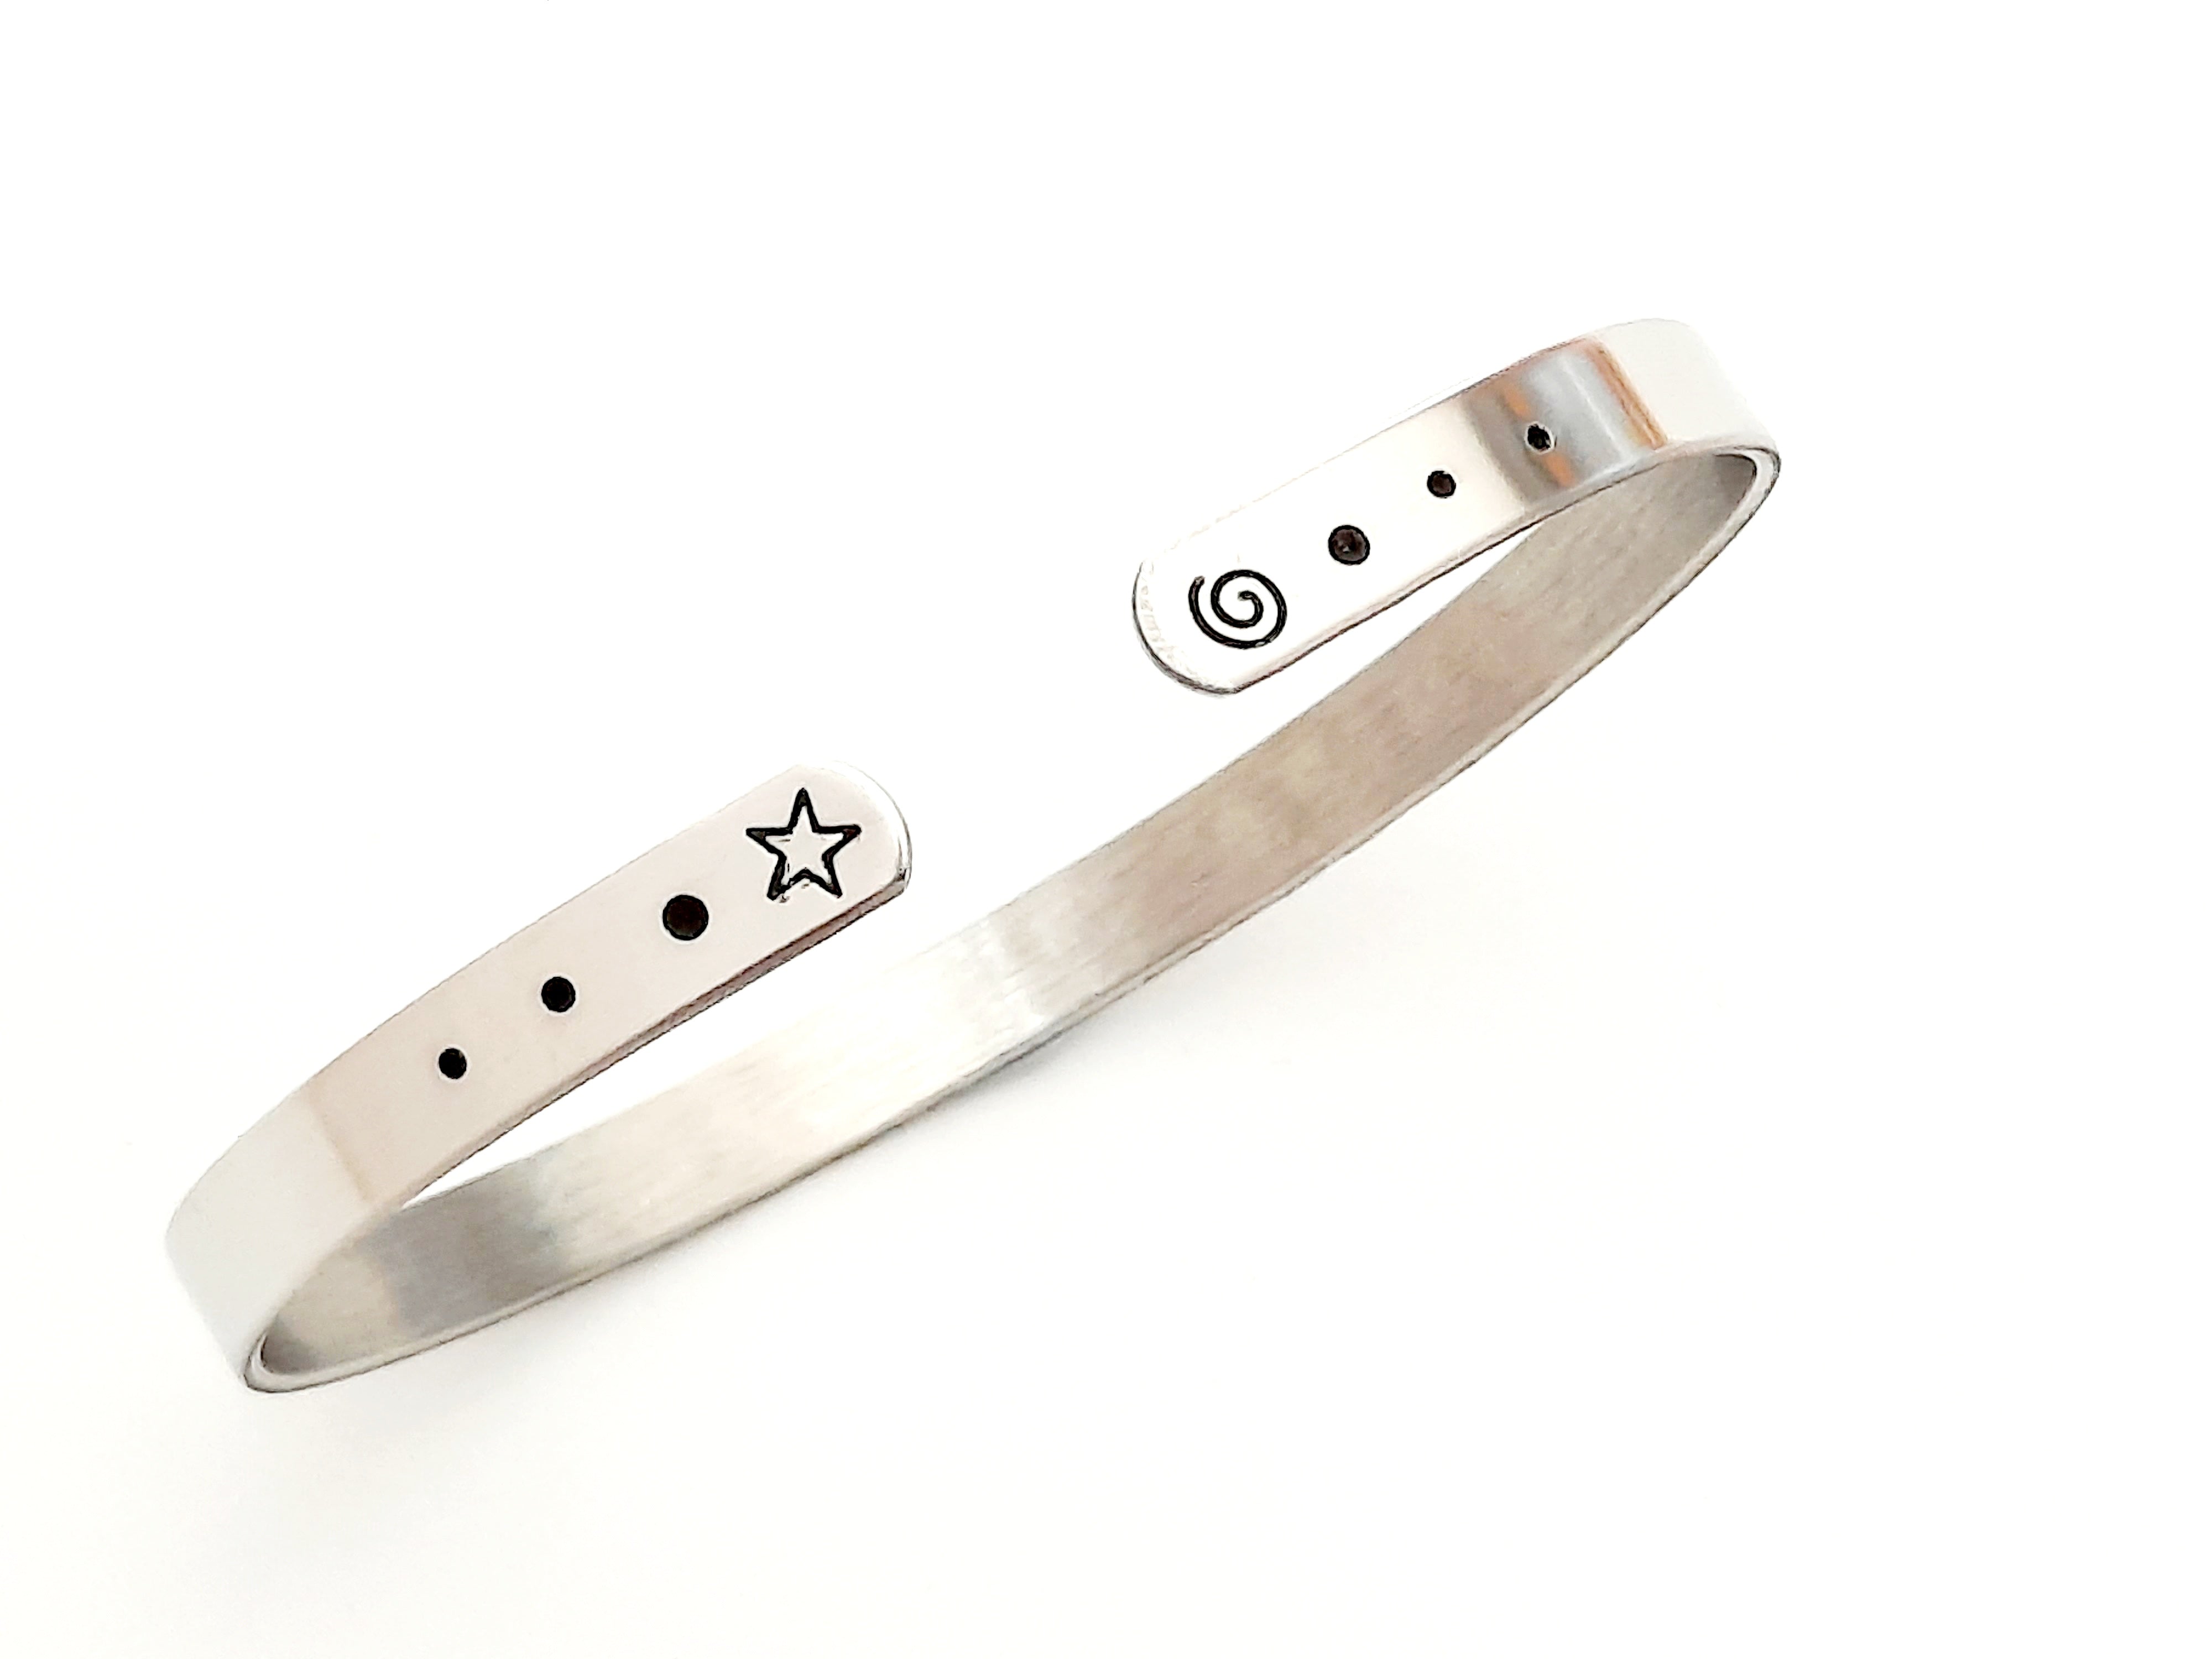 Personalisierte Silber Edelstahl Armband - Glänzend